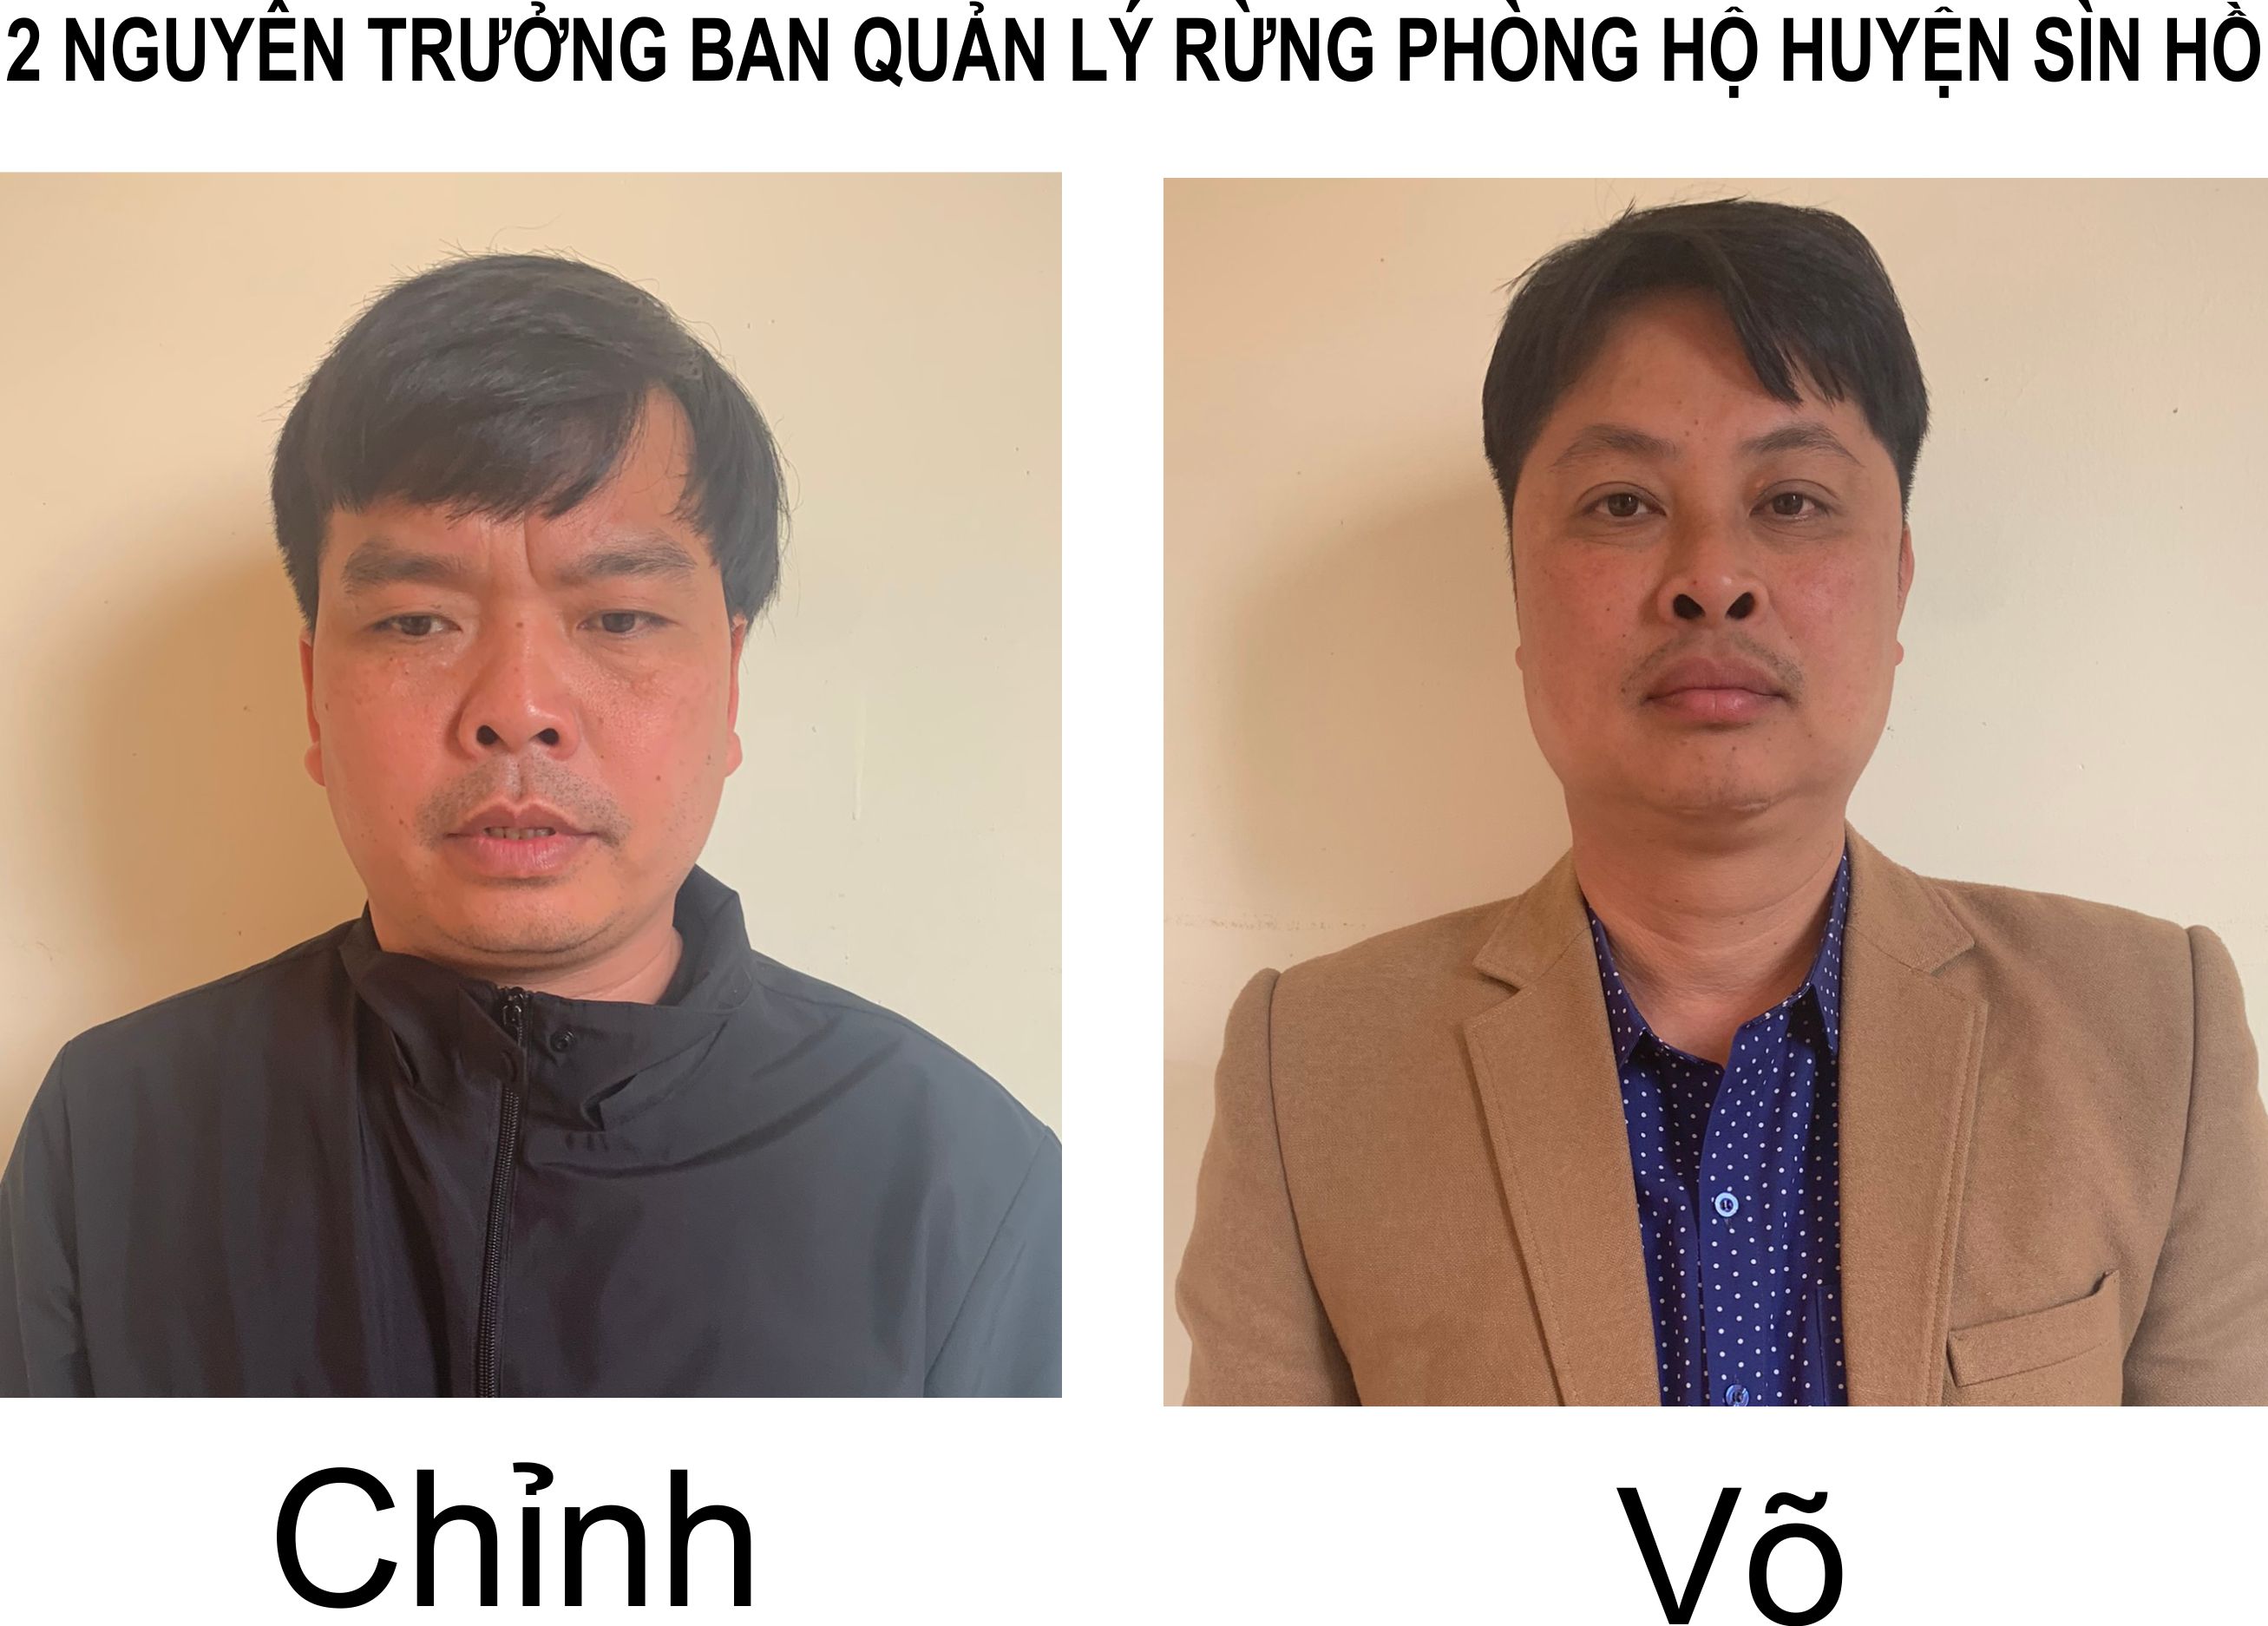 2 nguyên Trưởng ban quản lý rừng phòng hộ huyện Sìn Hồ bị tạm giữ